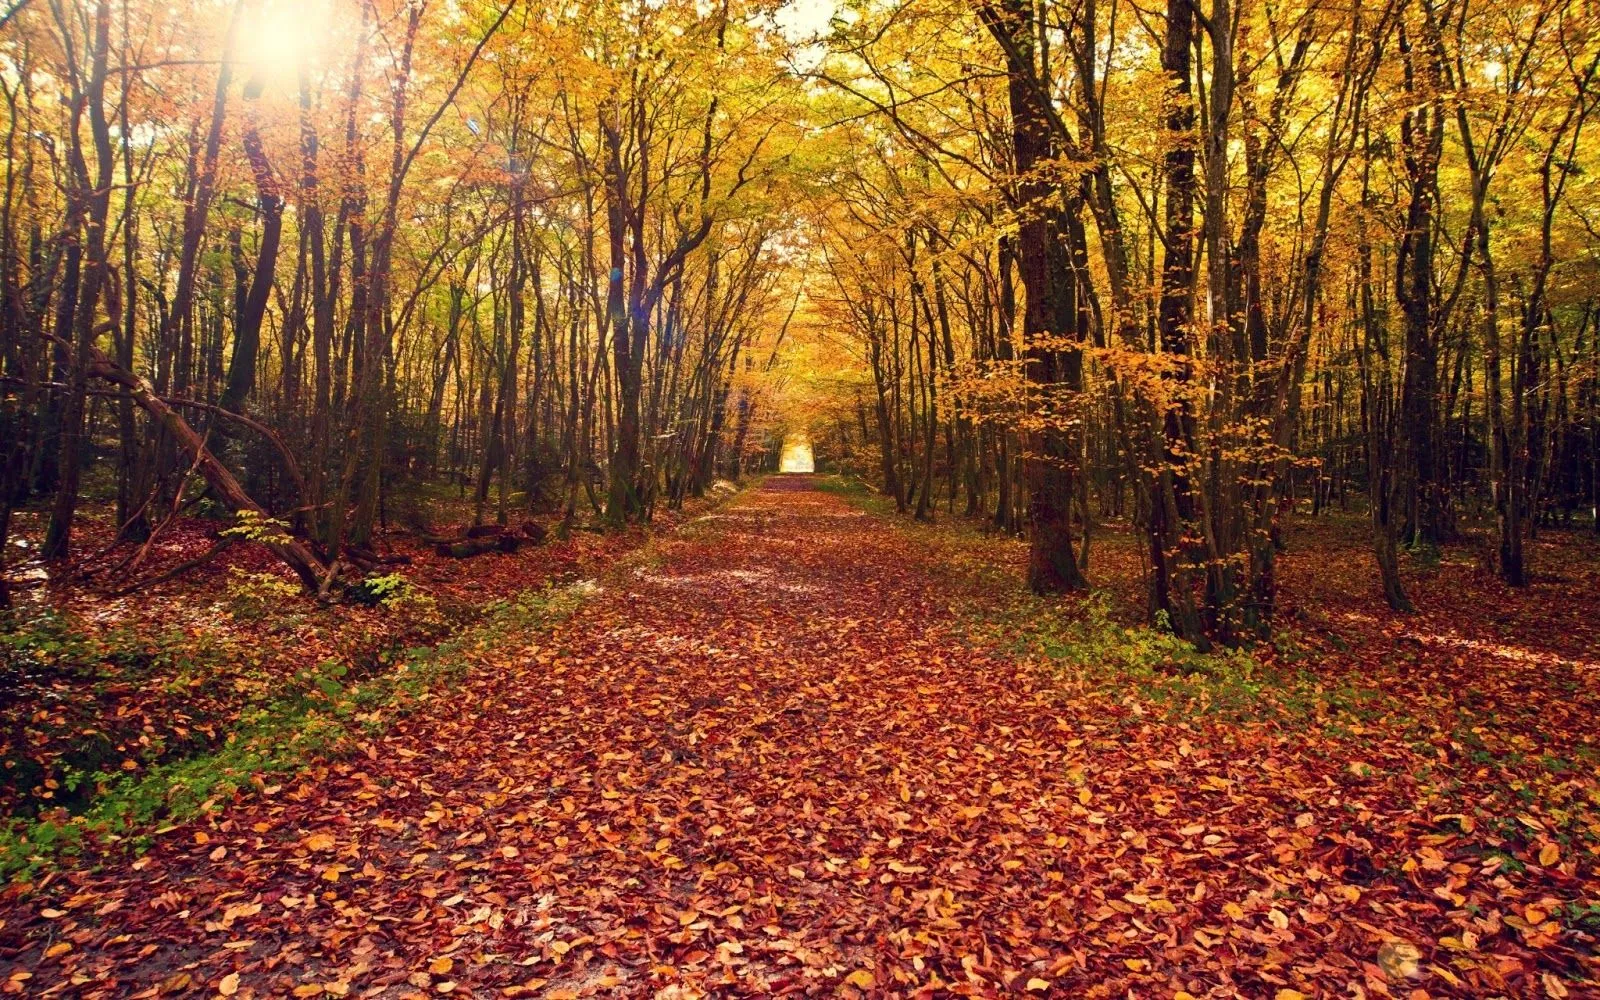 FOTOFRONTERA: Hermoso paisaje en otoño con árboles grandes